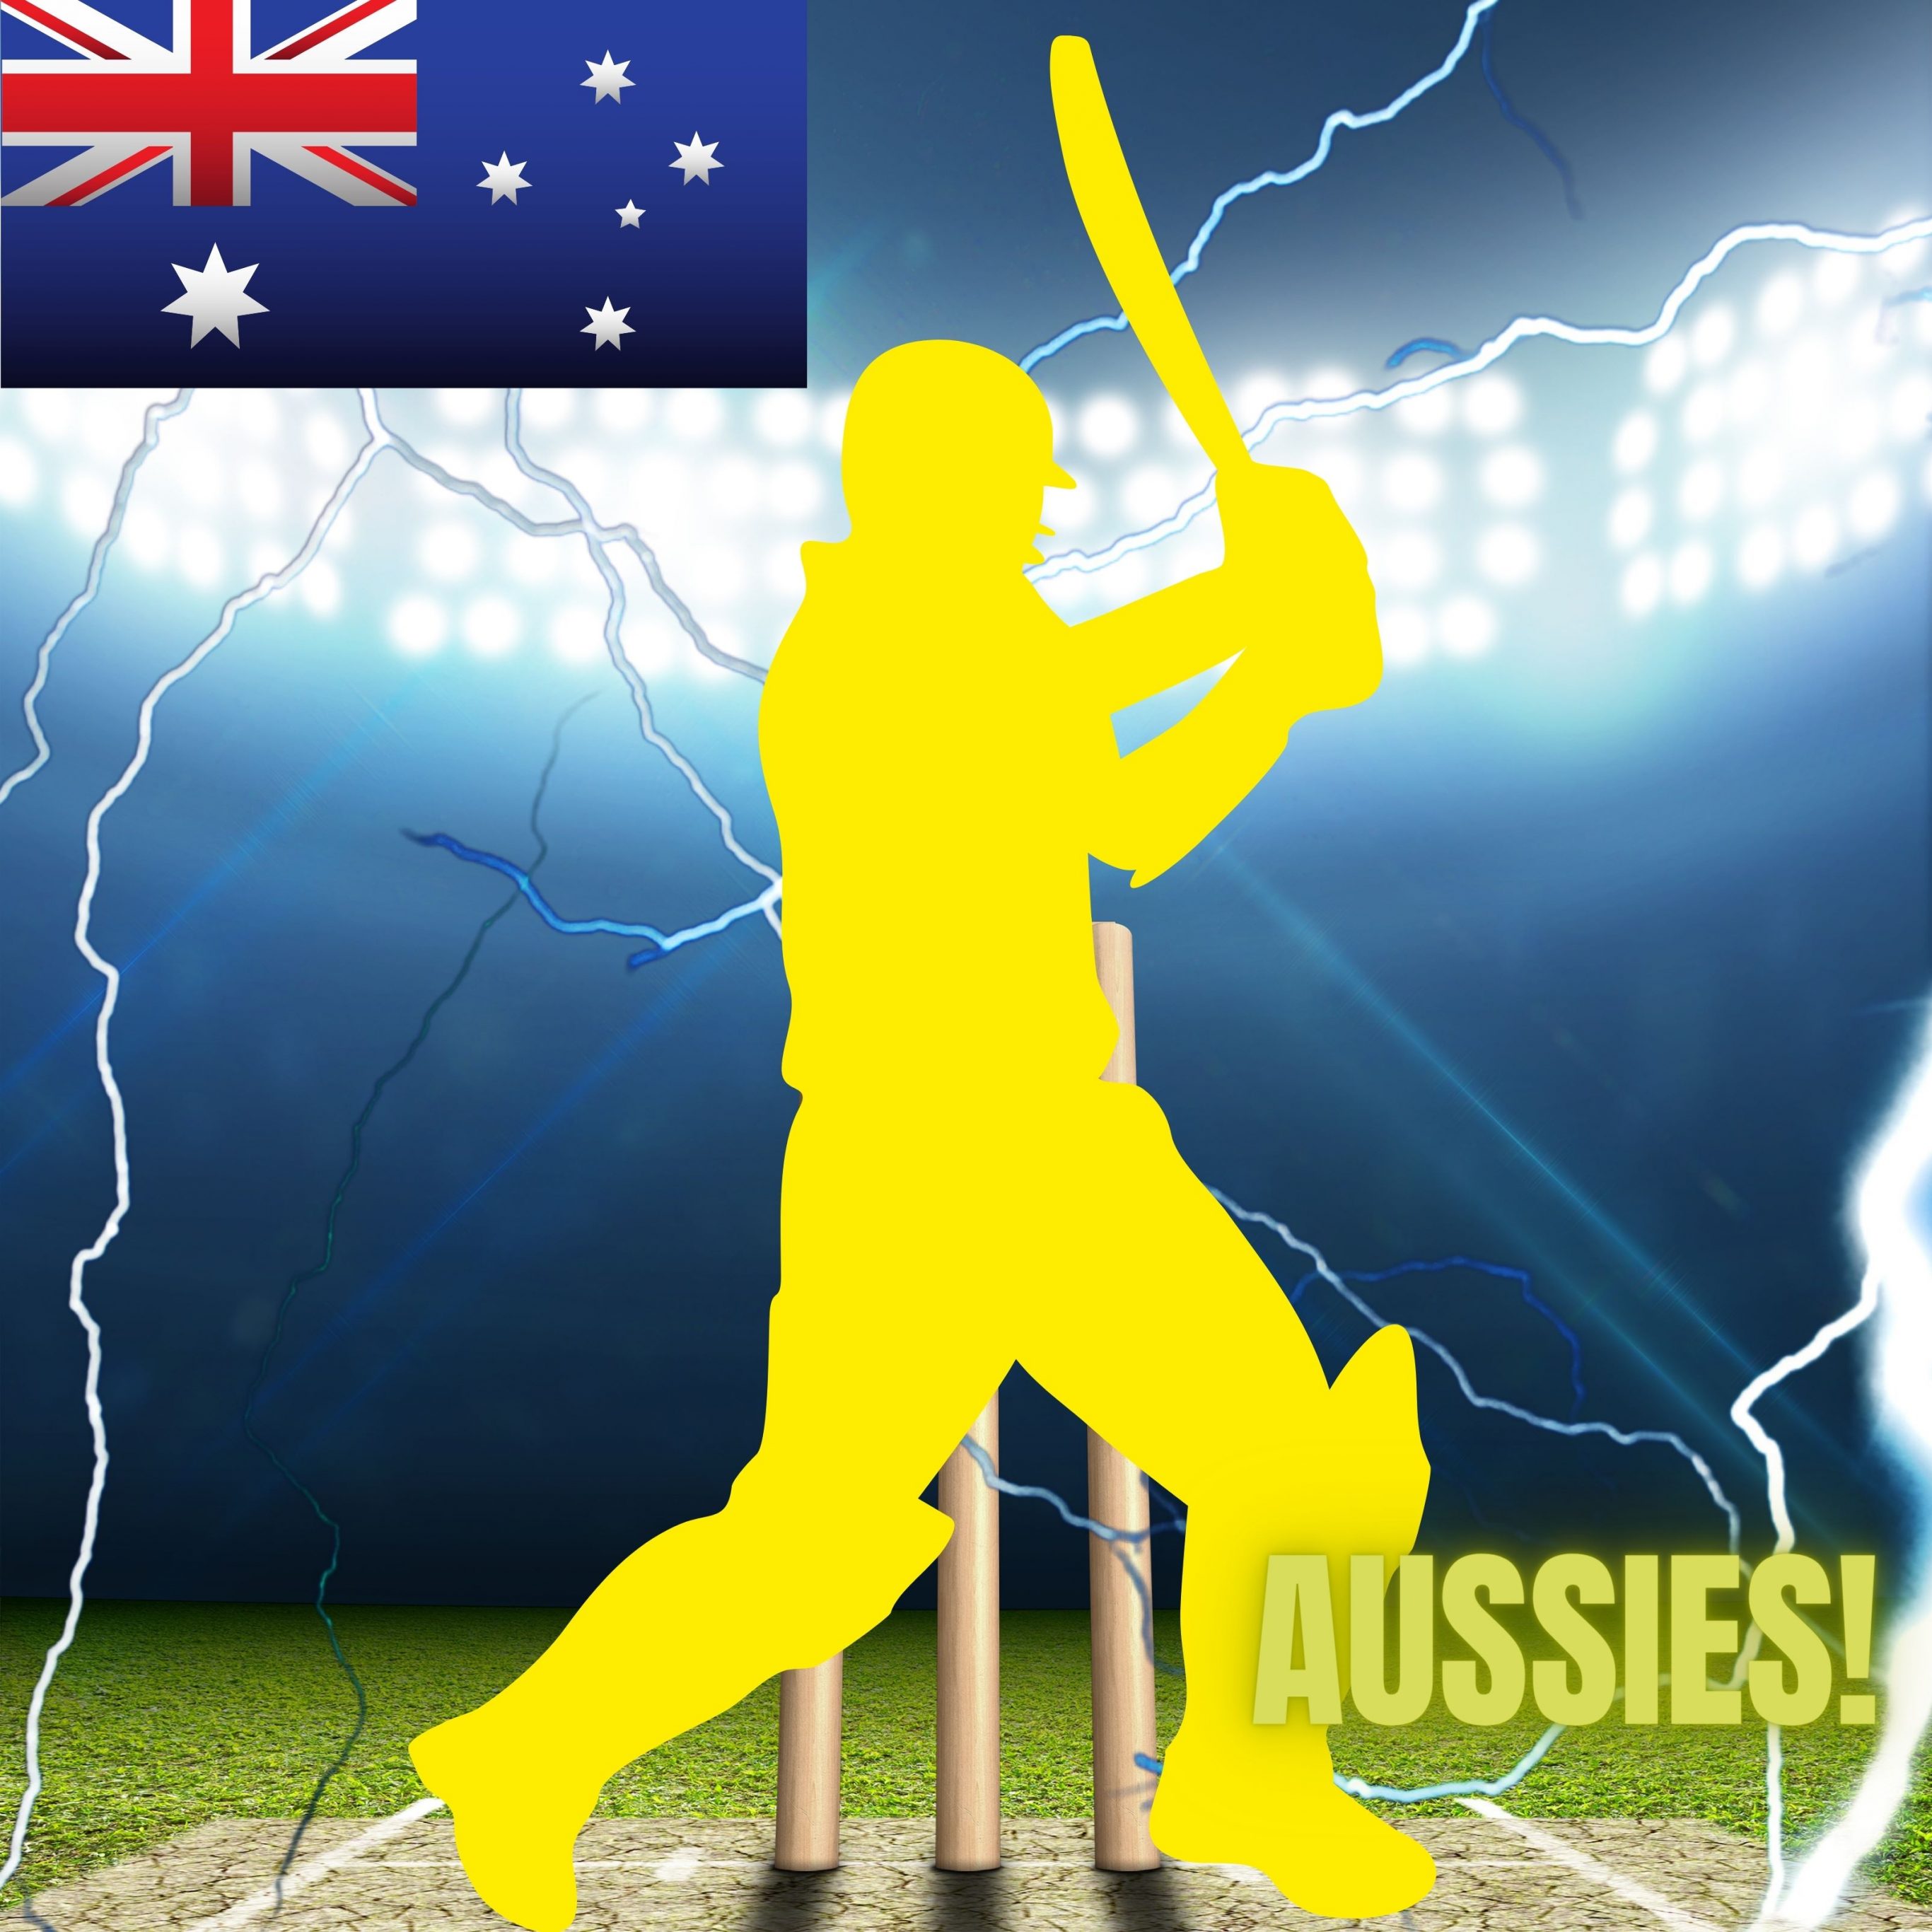 2732x2732 wallpapers 4k iPad Pro Australia Cricket Stadium iPad Wallpaper 2732x2732 pixels resolution